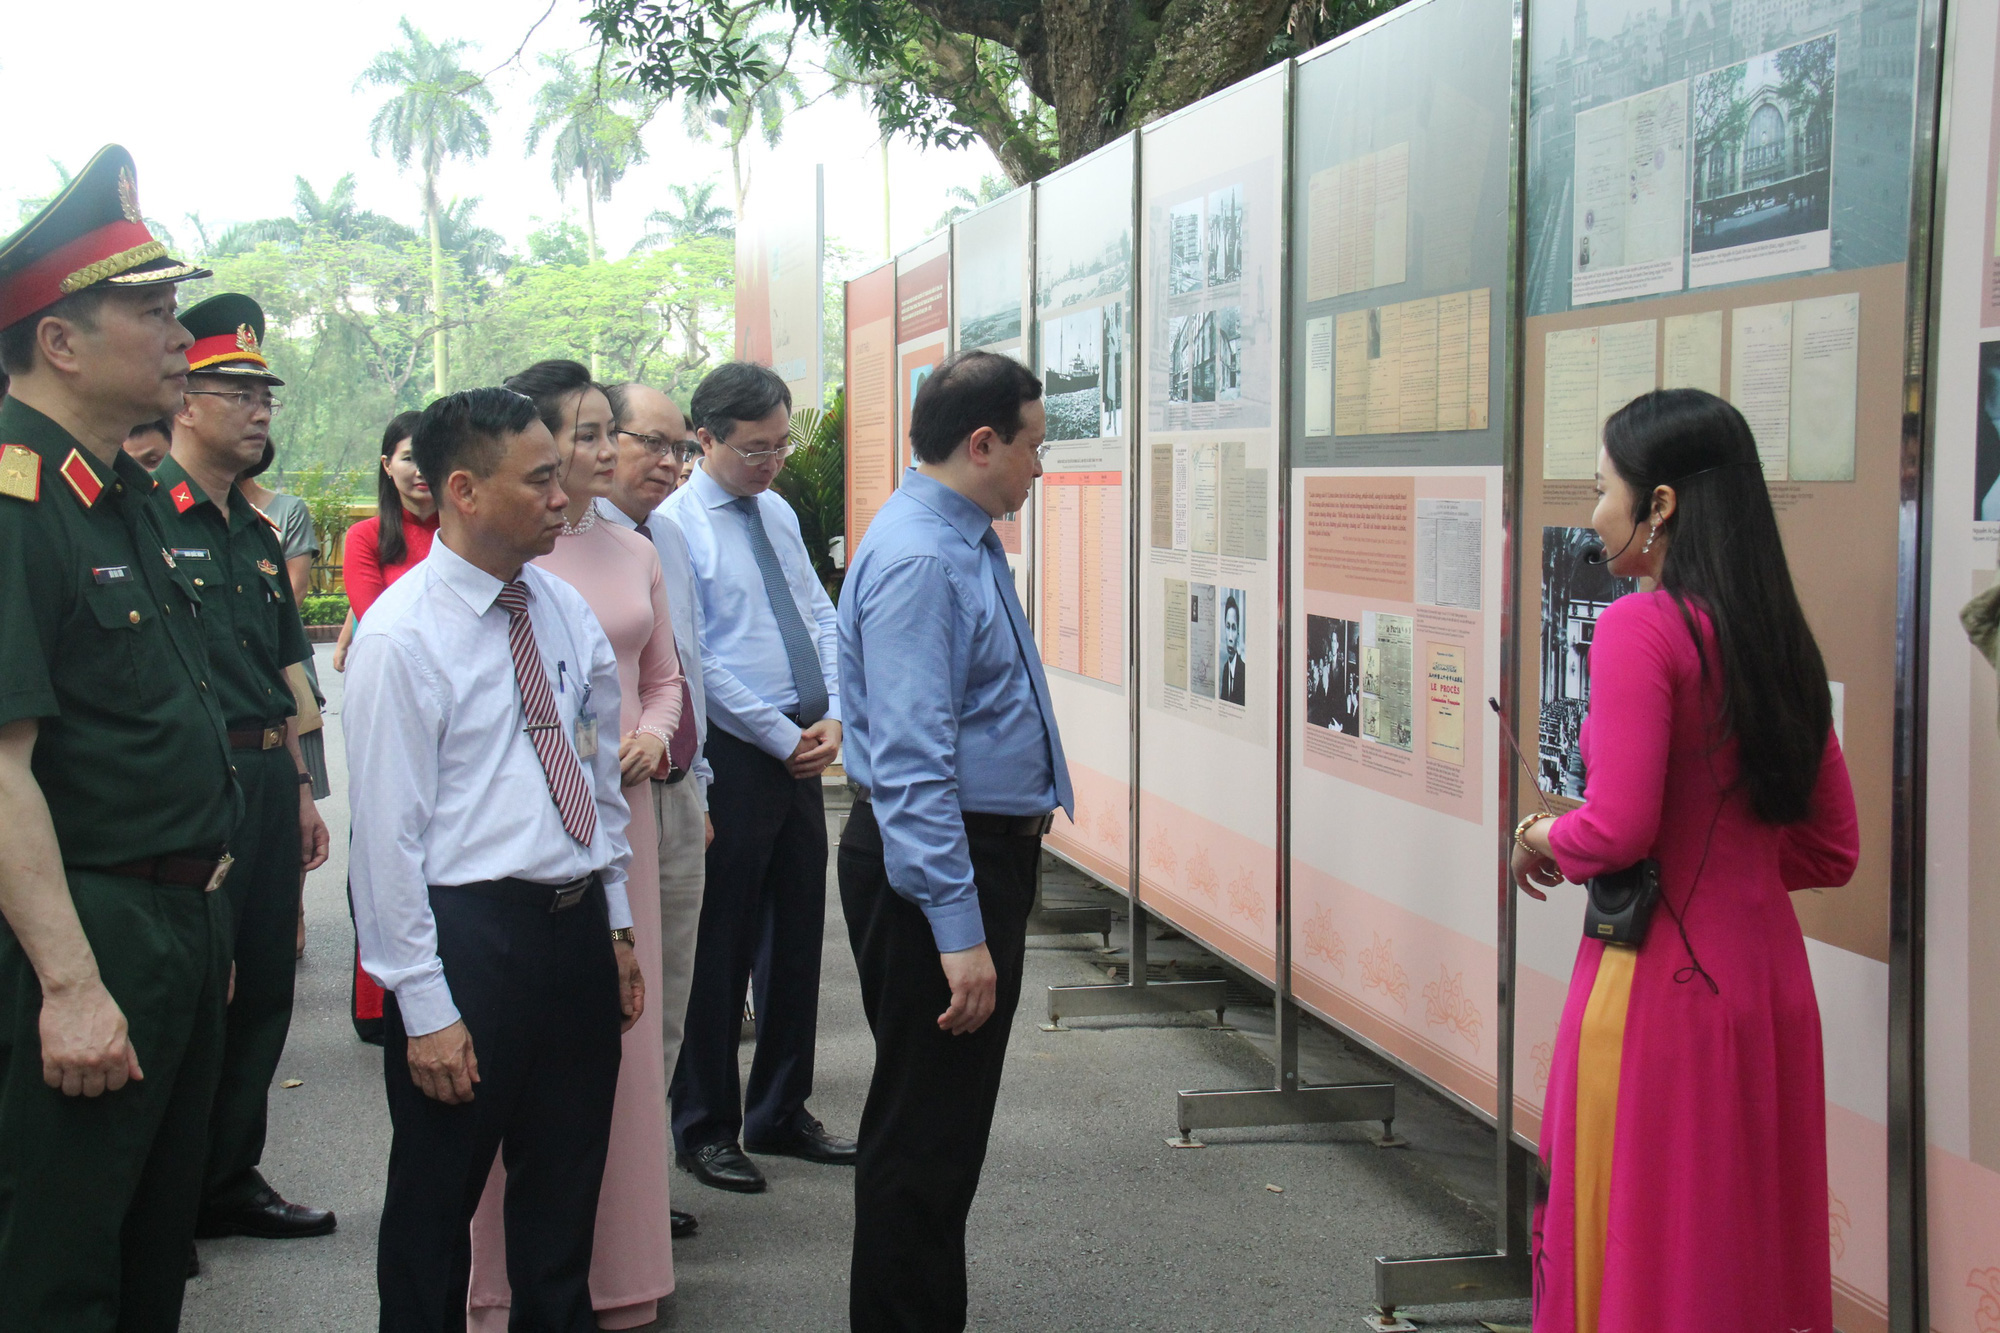 Khai mạc triển lãm ảnh kỷ niệm 130 năm Ngày sinh Chủ tịch Hồ Chí Minh - Ảnh 1.